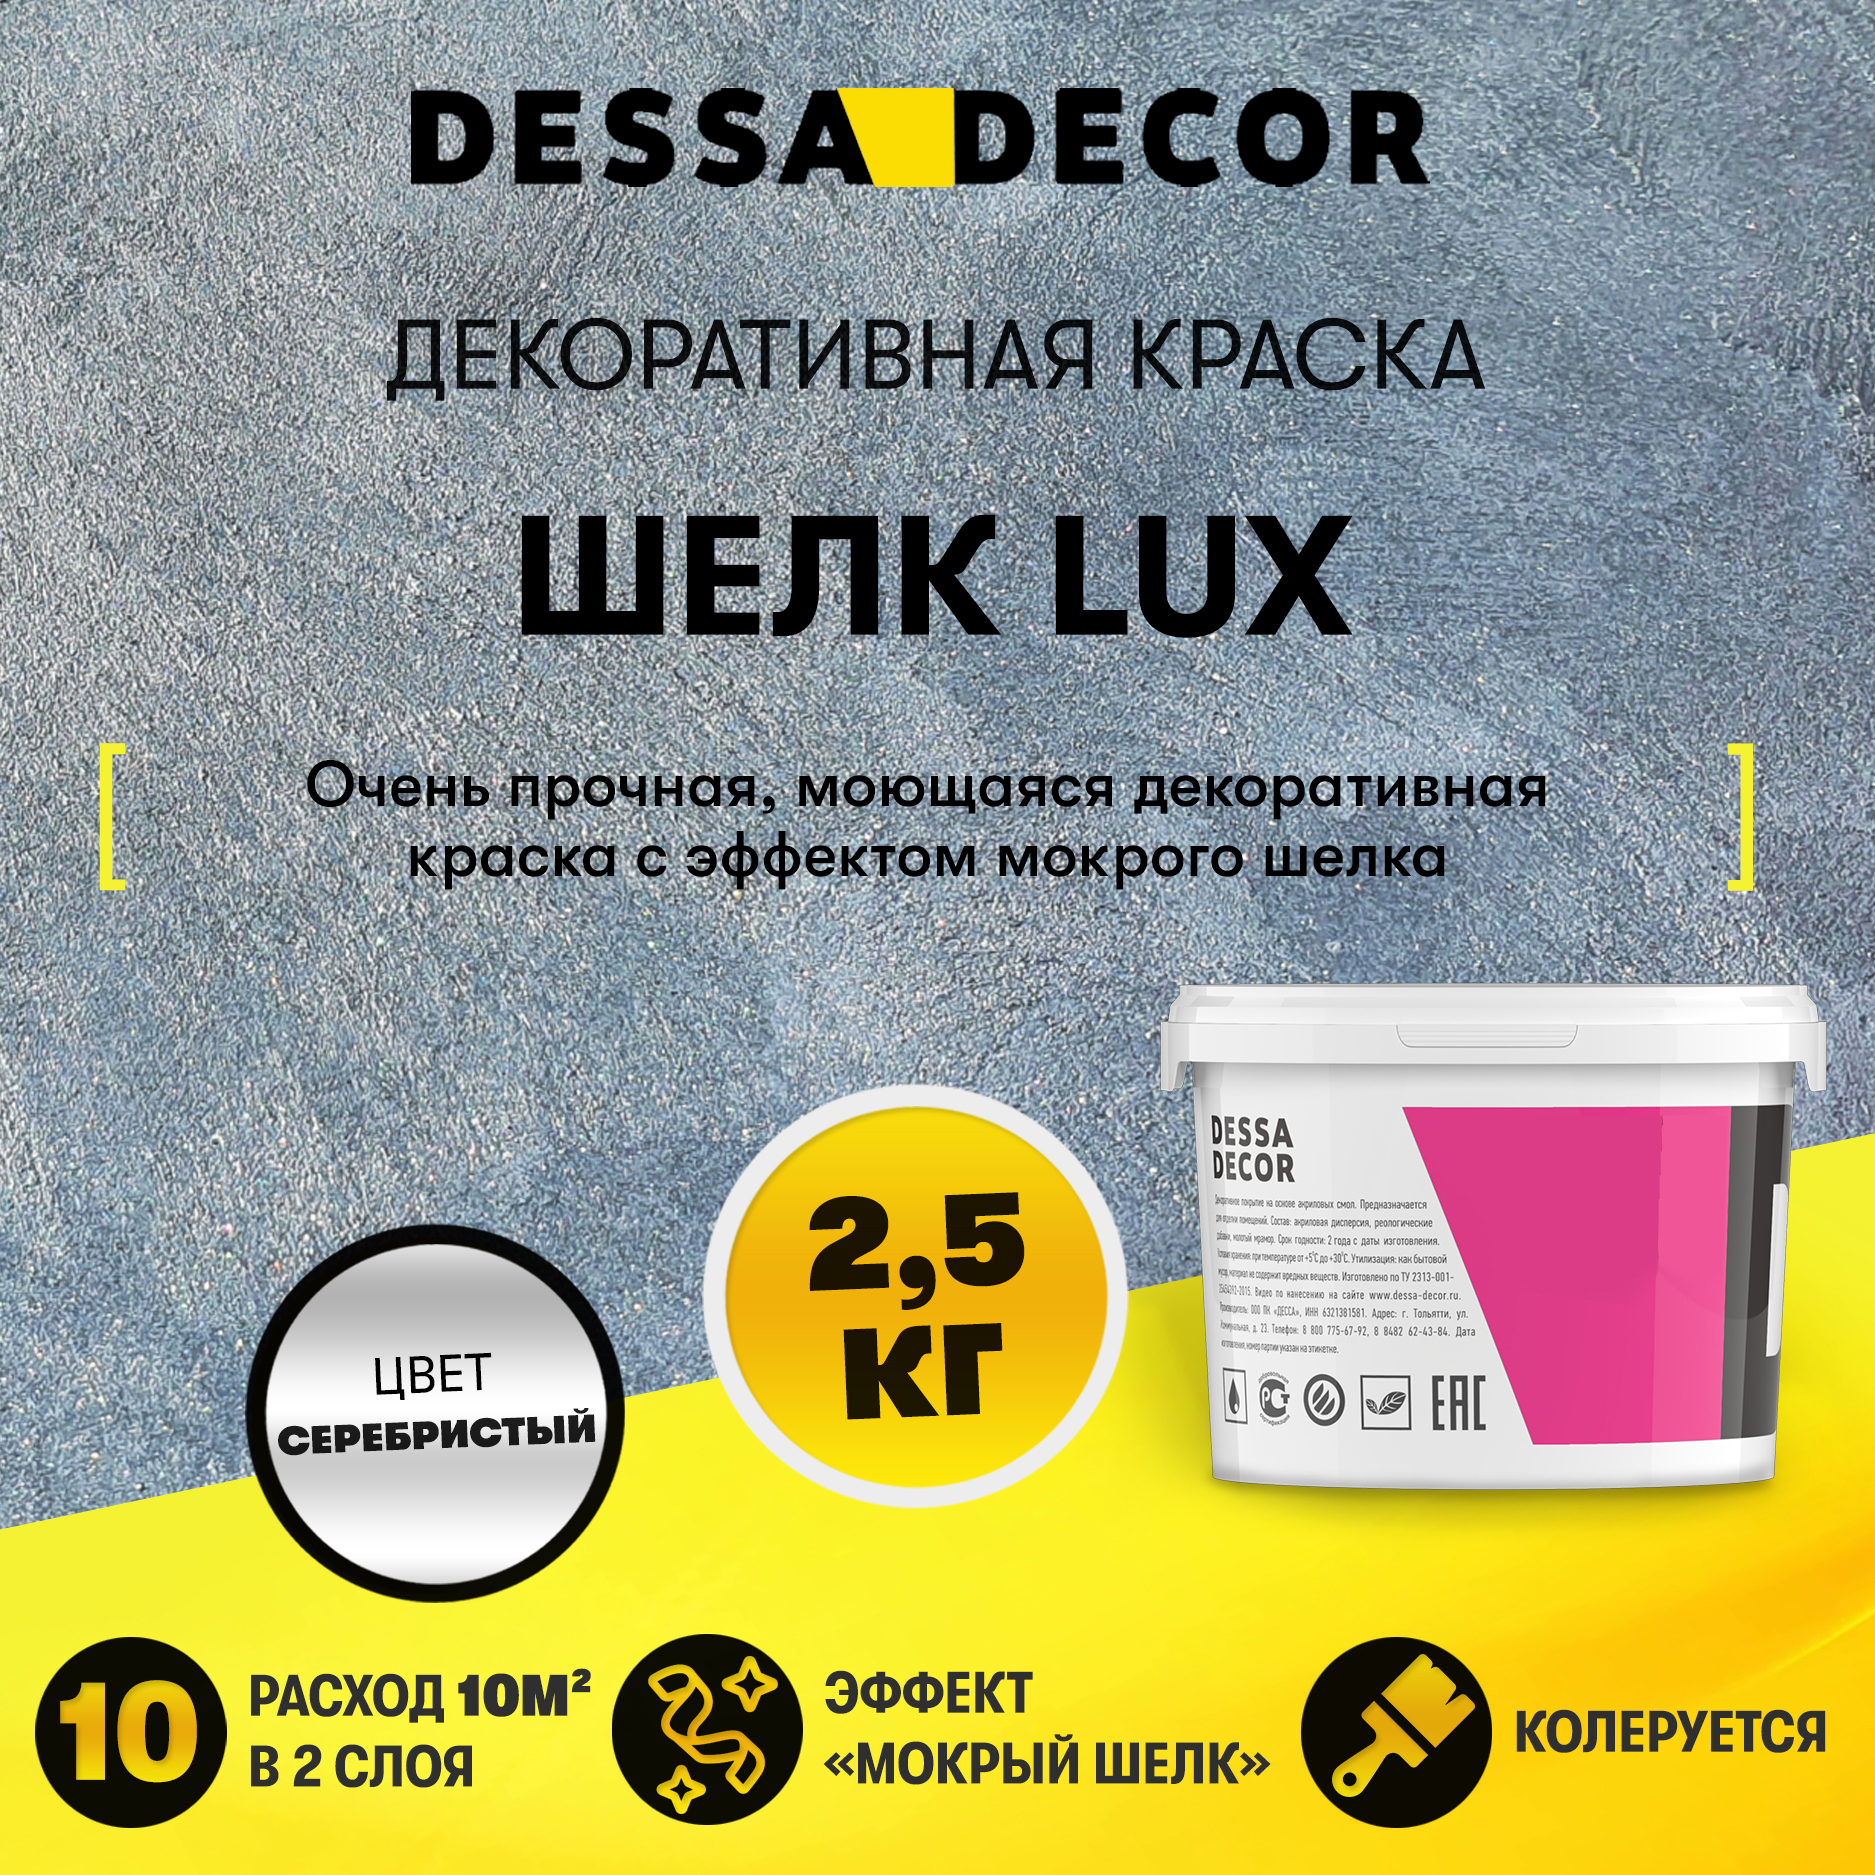 91262886 Краска декоративная Шелк Lux прочная влагостойкая перламутровая краска 2.5 кг STLM-0526956 DESSA DECOR